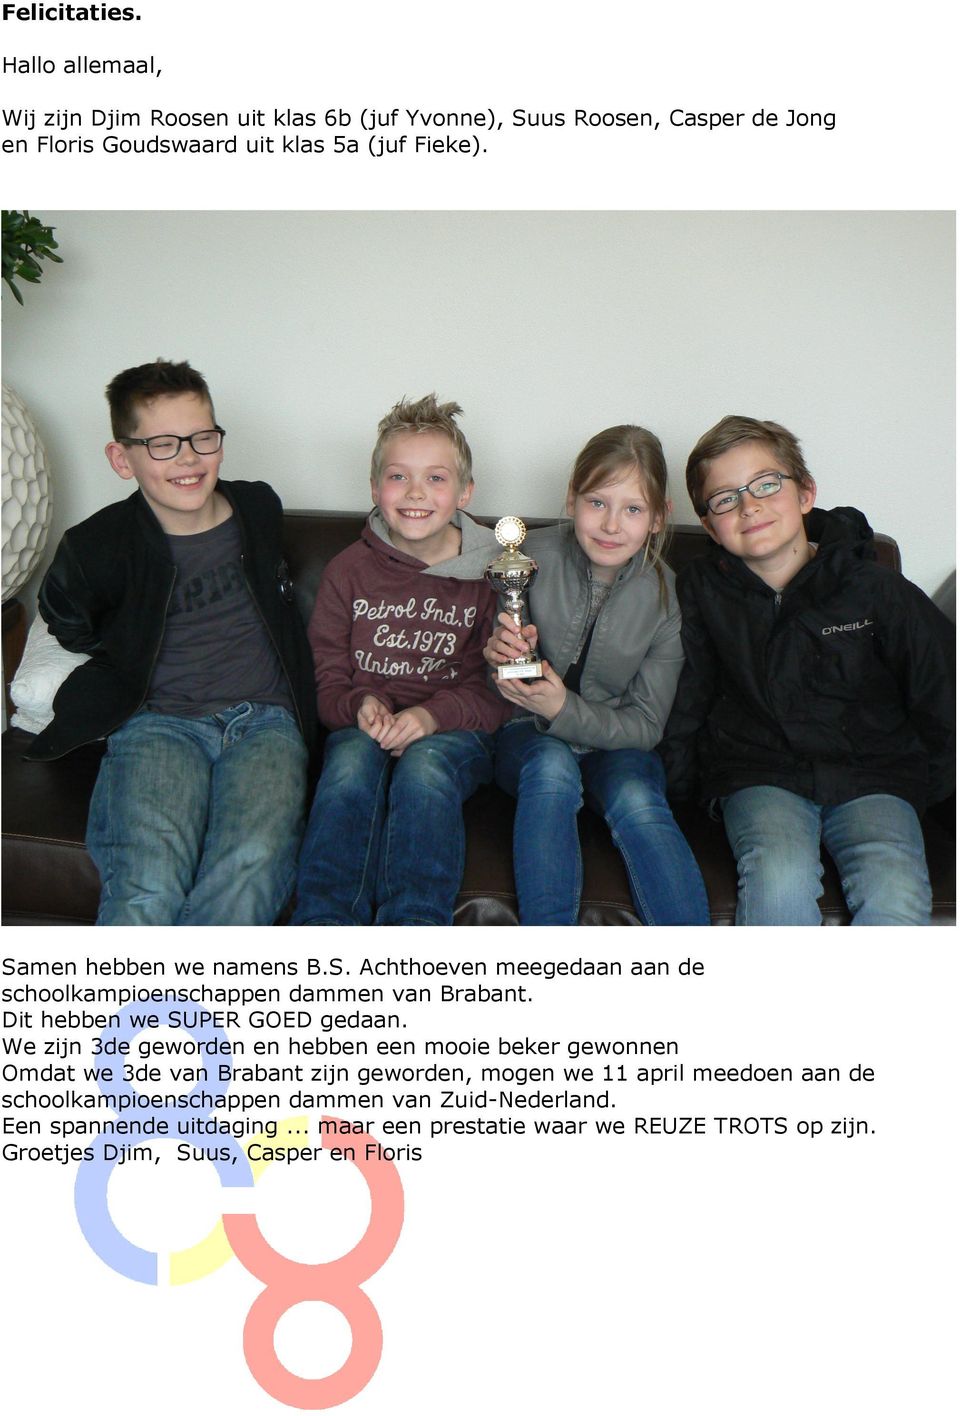 Samen hebben we namens B.S. Achthoeven meegedaan aan de schoolkampioenschappen dammen van Brabant. Dit hebben we SUPER GOED gedaan.